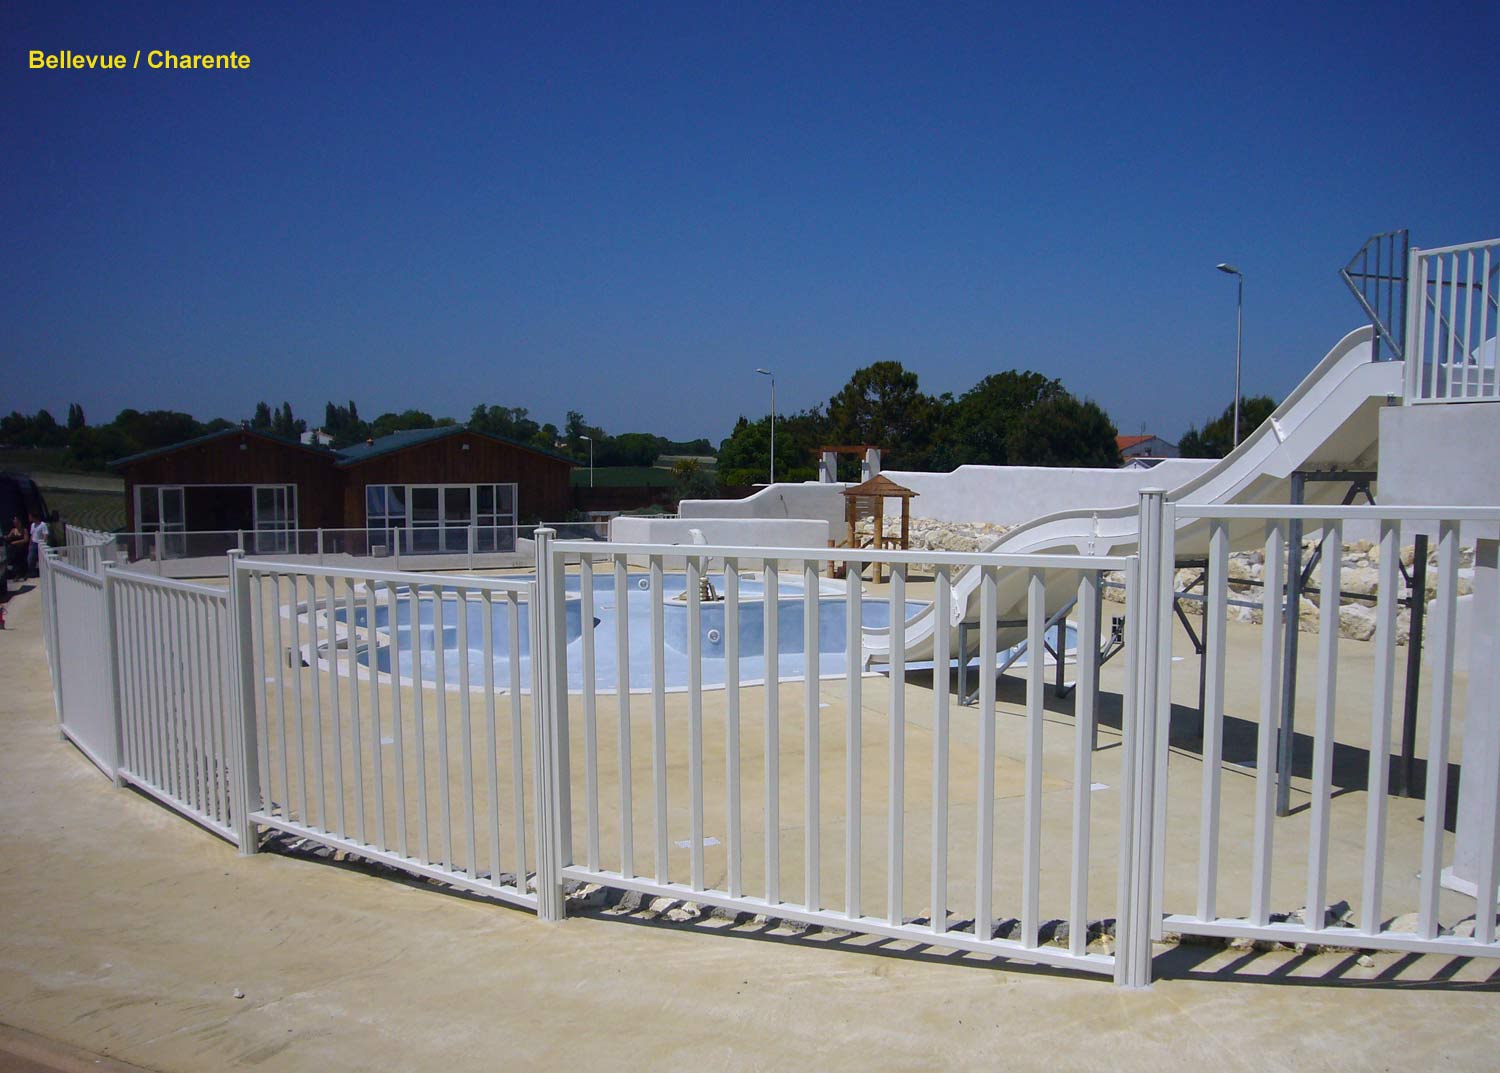 barrière de piscine en verre et barreaux dans le camping - Bellevue en Charente - clôturant un superbe équipement paysagé avec plusieurs bassins de piscine